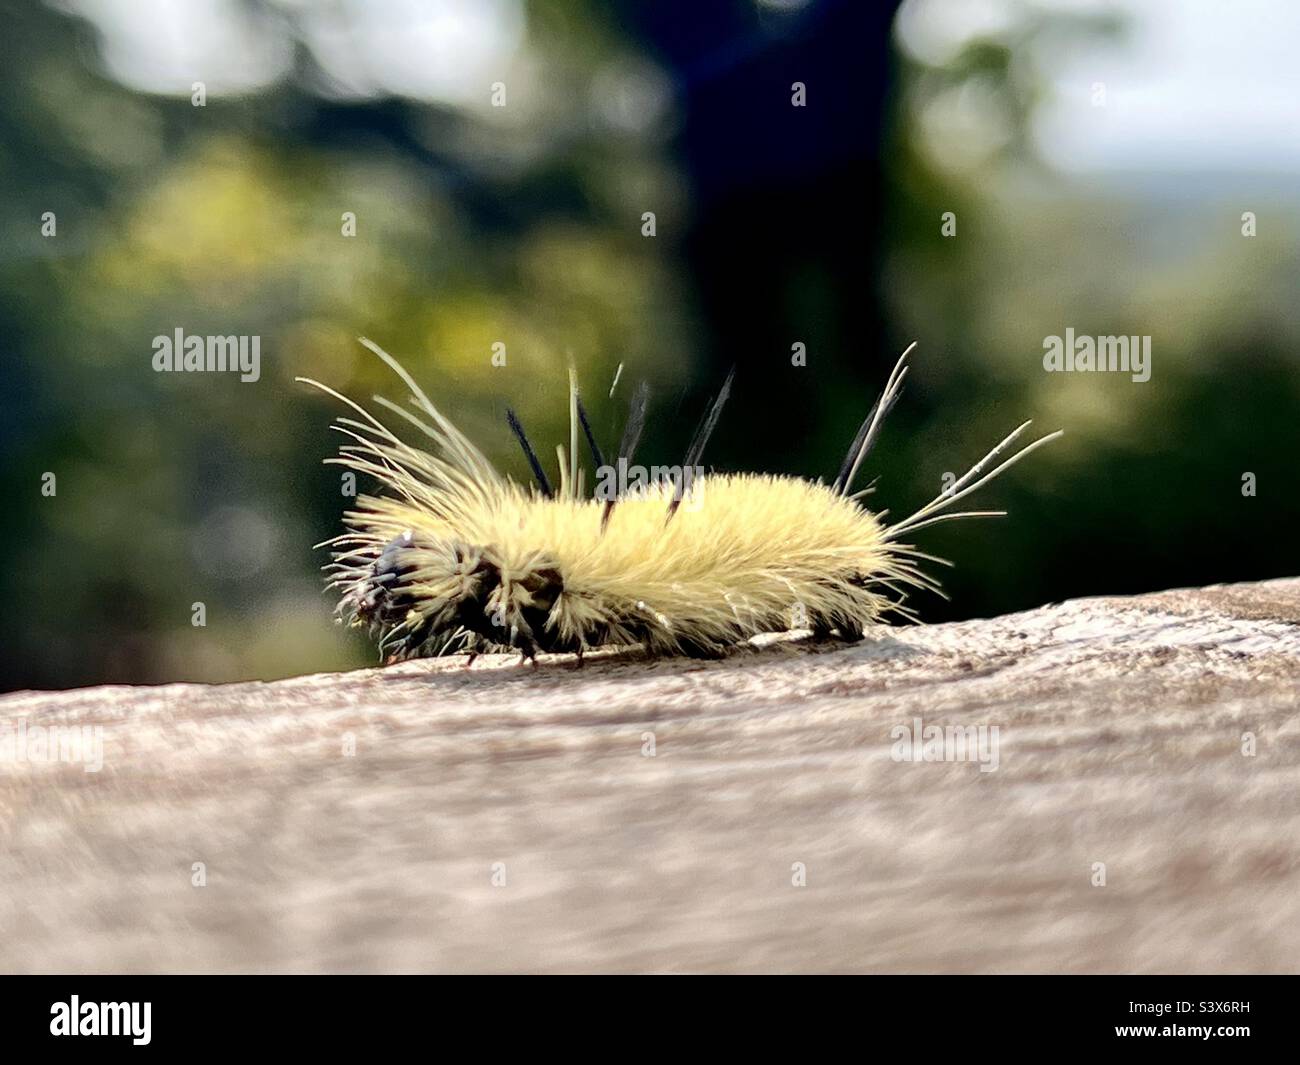 Un cinghiale Dagger Moth cinge lungo una ringhiera del ponte. Non toccare - i picchi pungeranno! Foto Stock